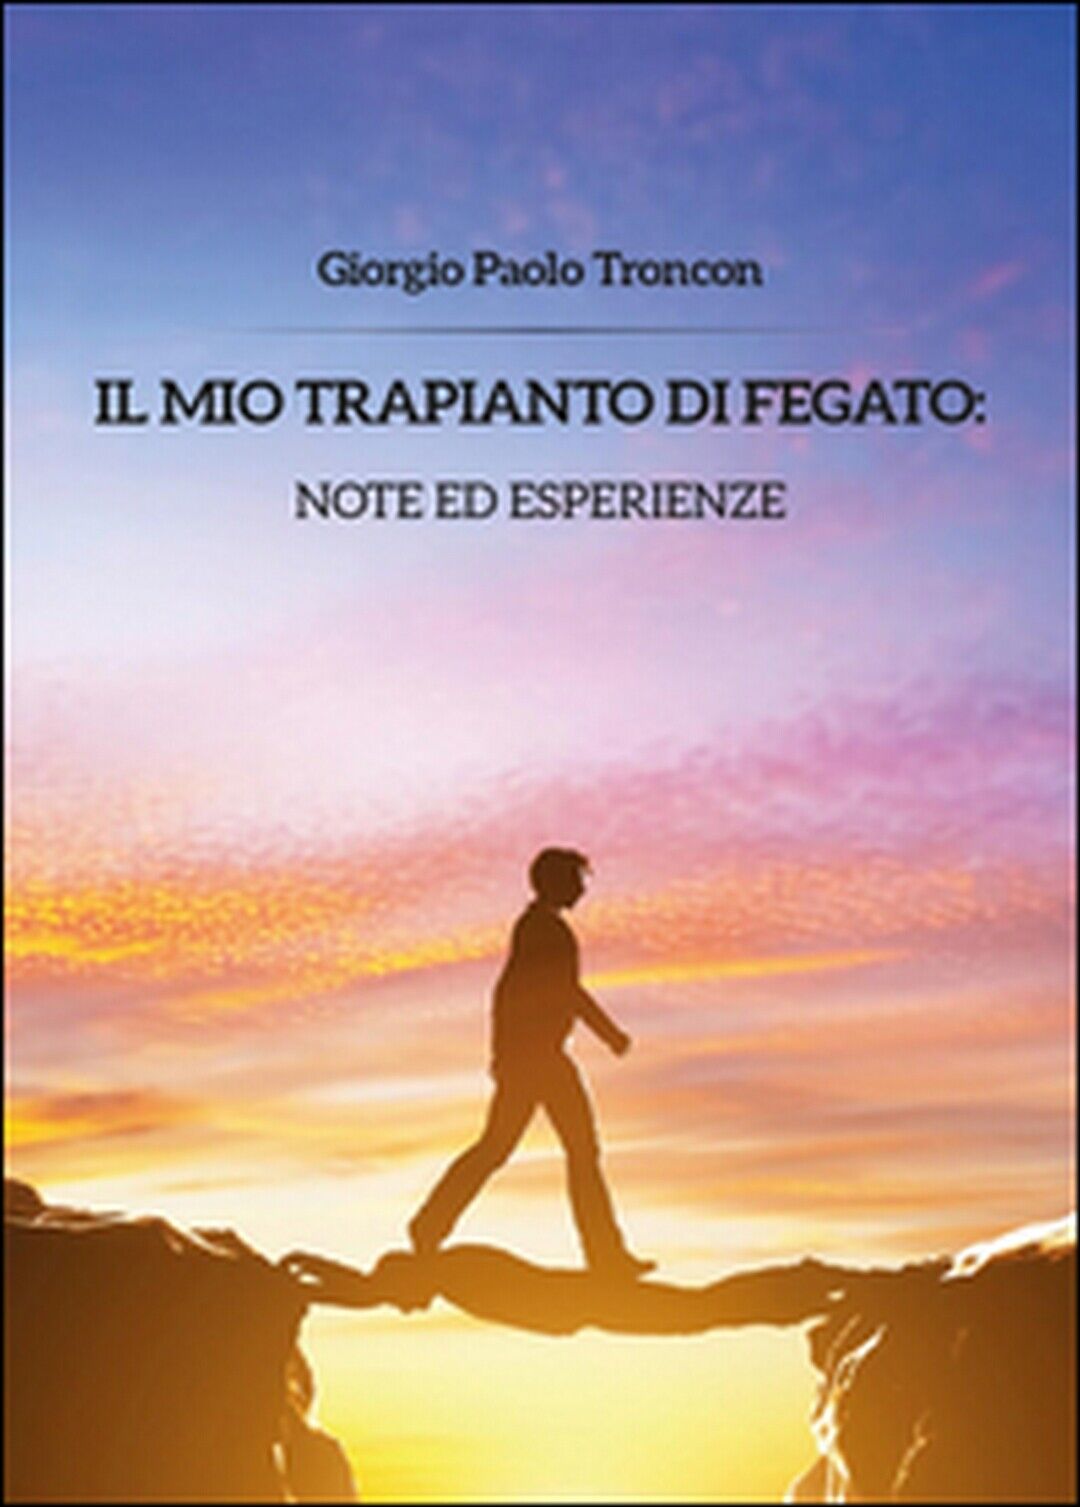 Il mio trapianto di fegato: note... Giorgio Paolo Troncon,  2014,  Youcanprint